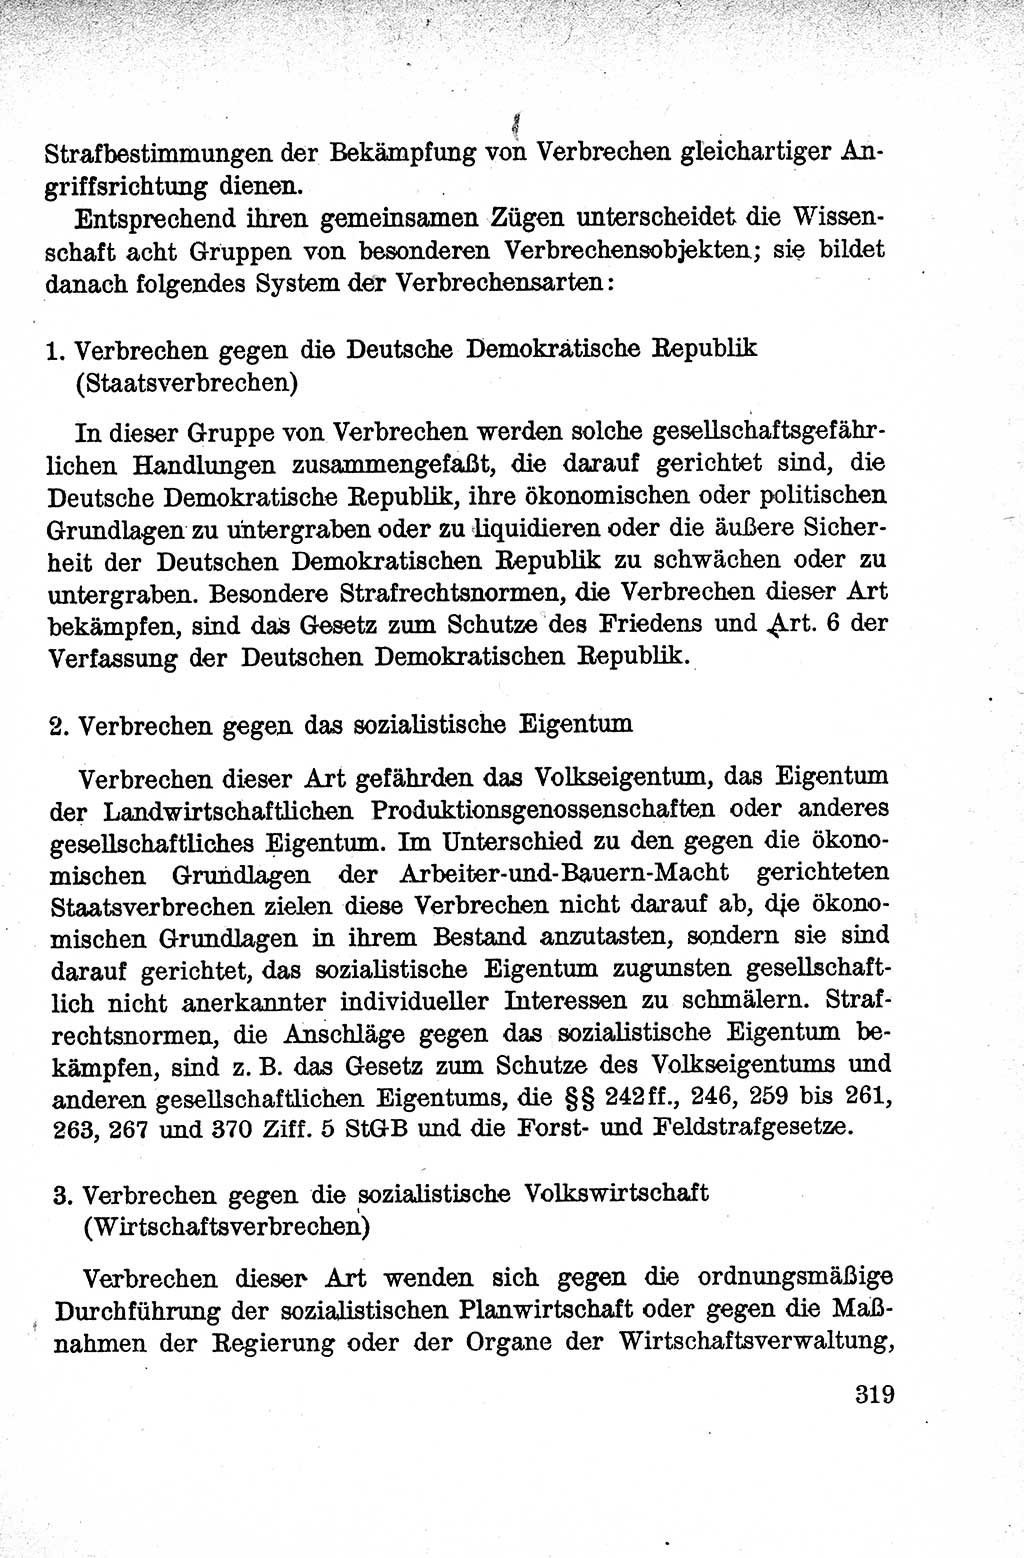 Lehrbuch des Strafrechts der Deutschen Demokratischen Republik (DDR), Allgemeiner Teil 1959, Seite 319 (Lb. Strafr. DDR AT 1959, S. 319)